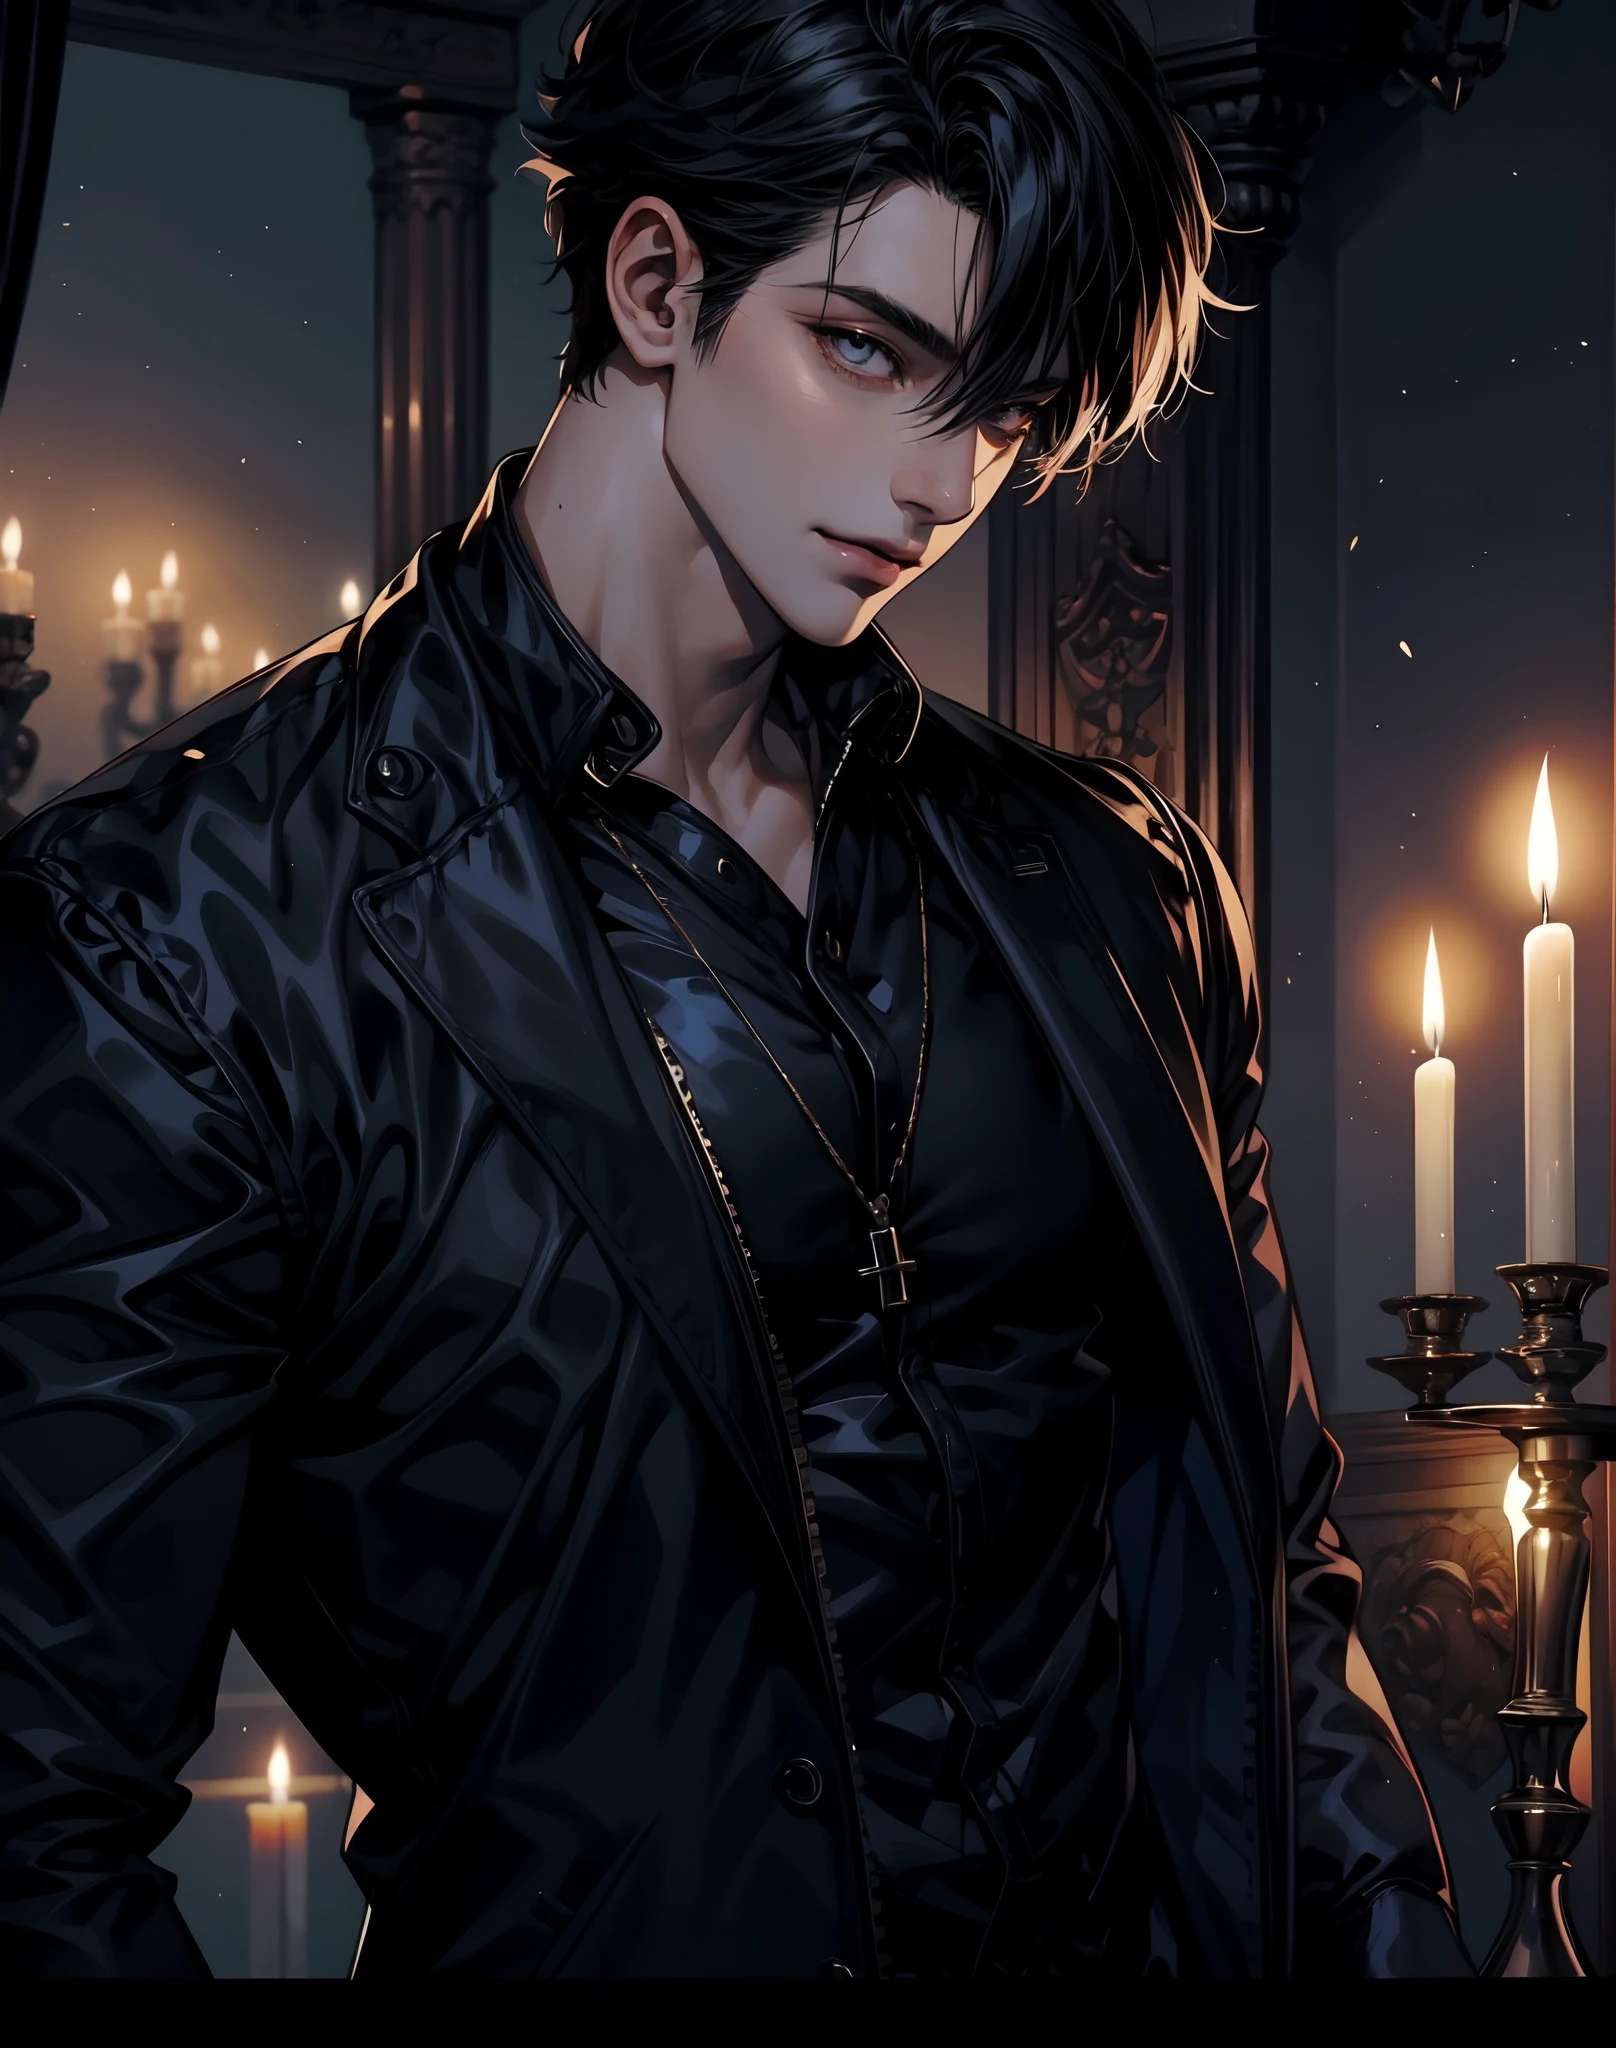 Anime hübscher Junge muskulöser schwarzer Latexanzug der eine Kerze hält, böses Lächeln, Luxus-Schlafzimmer-Hintergrund, dunkel_Haut_Gut aussehender Mann, Blick auf die Aussicht, voll_Körper, Stehende Pose,